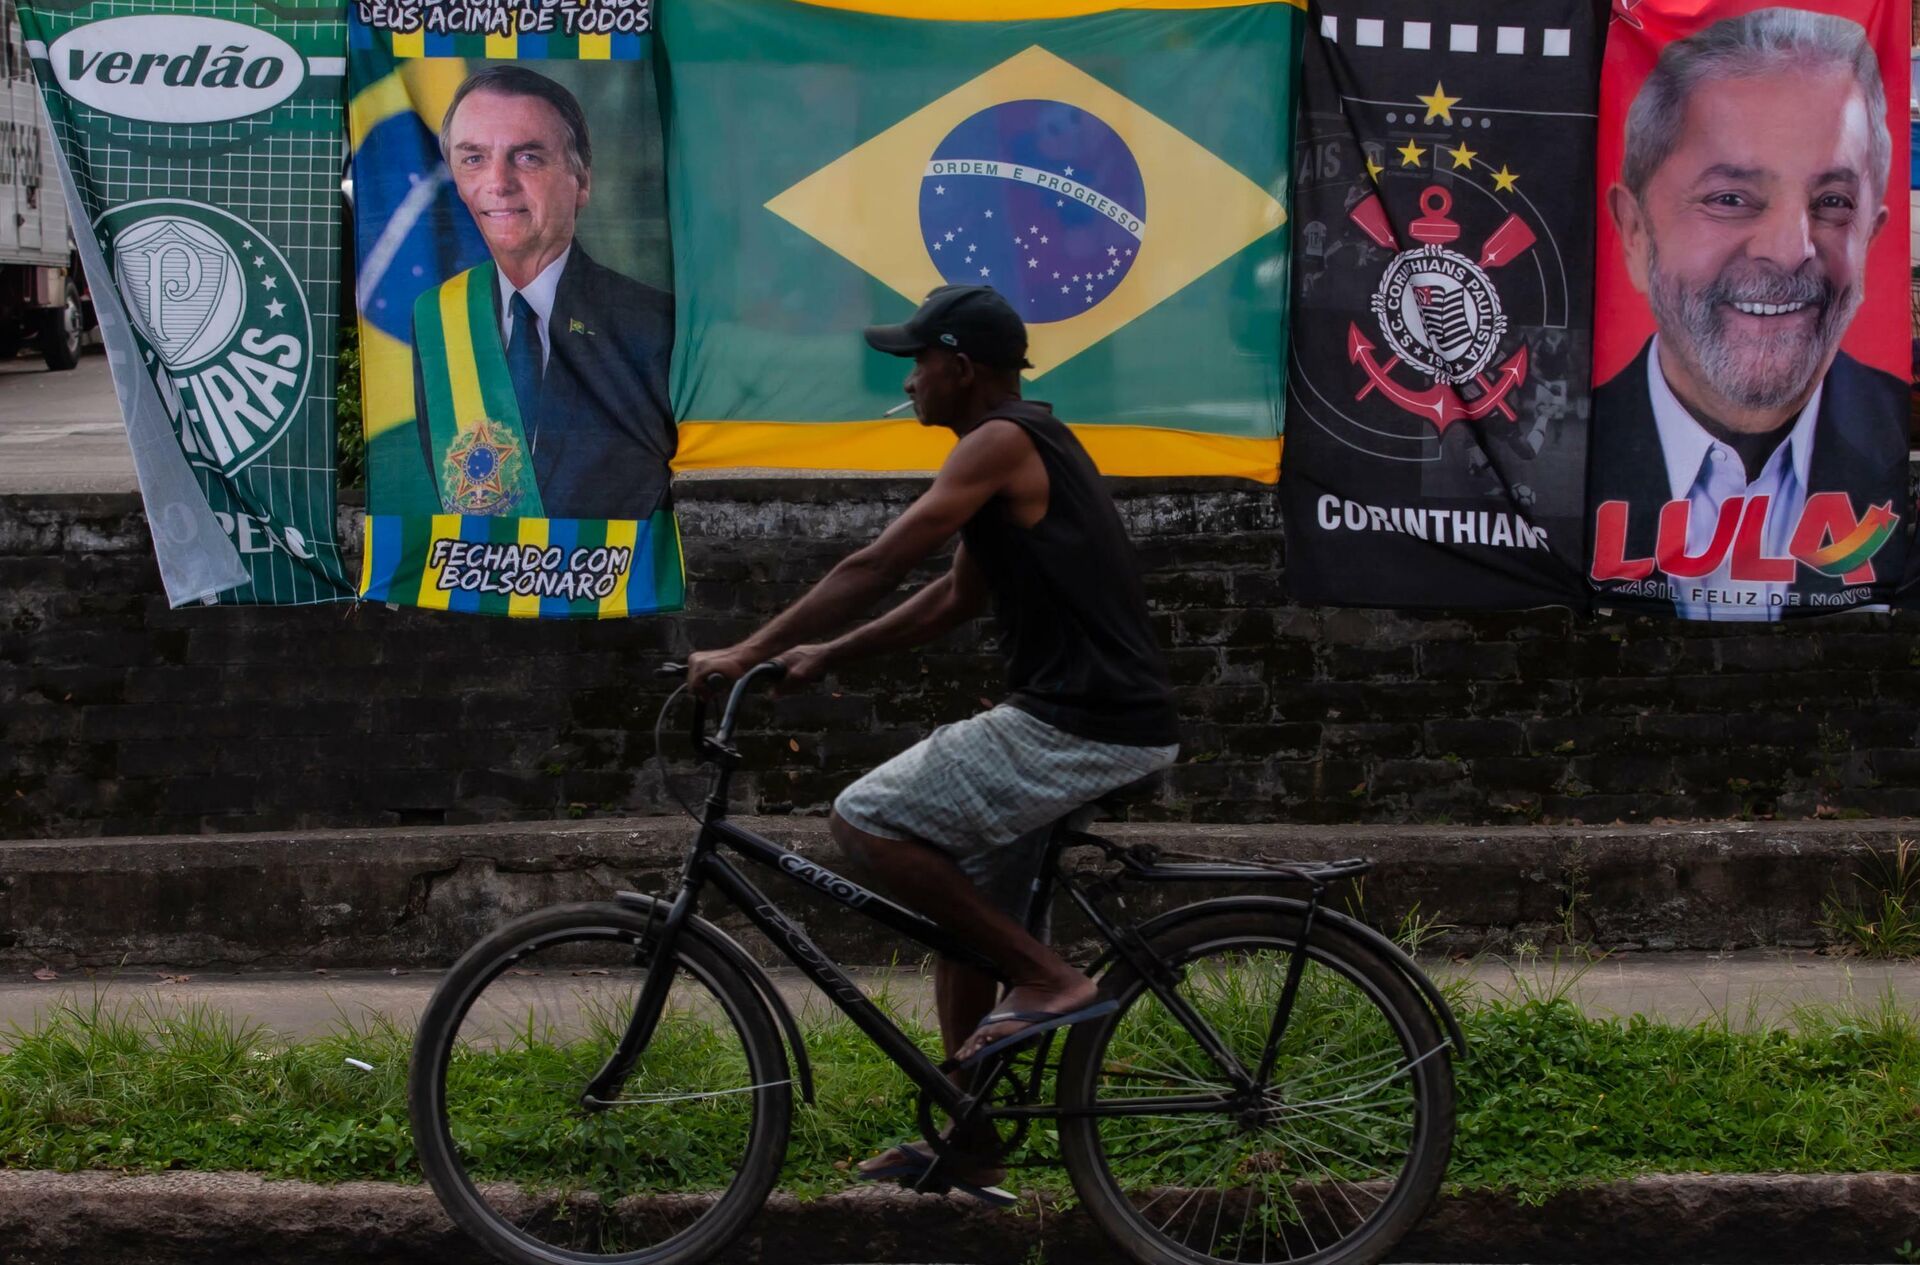 Ambulante vende bandeiras de Jair Bolsonaro e Lula no mesmo varal na cidade de Santos, em São Paulo, em 25 de janeiro de 2022 - Sputnik Brasil, 1920, 13.09.2022